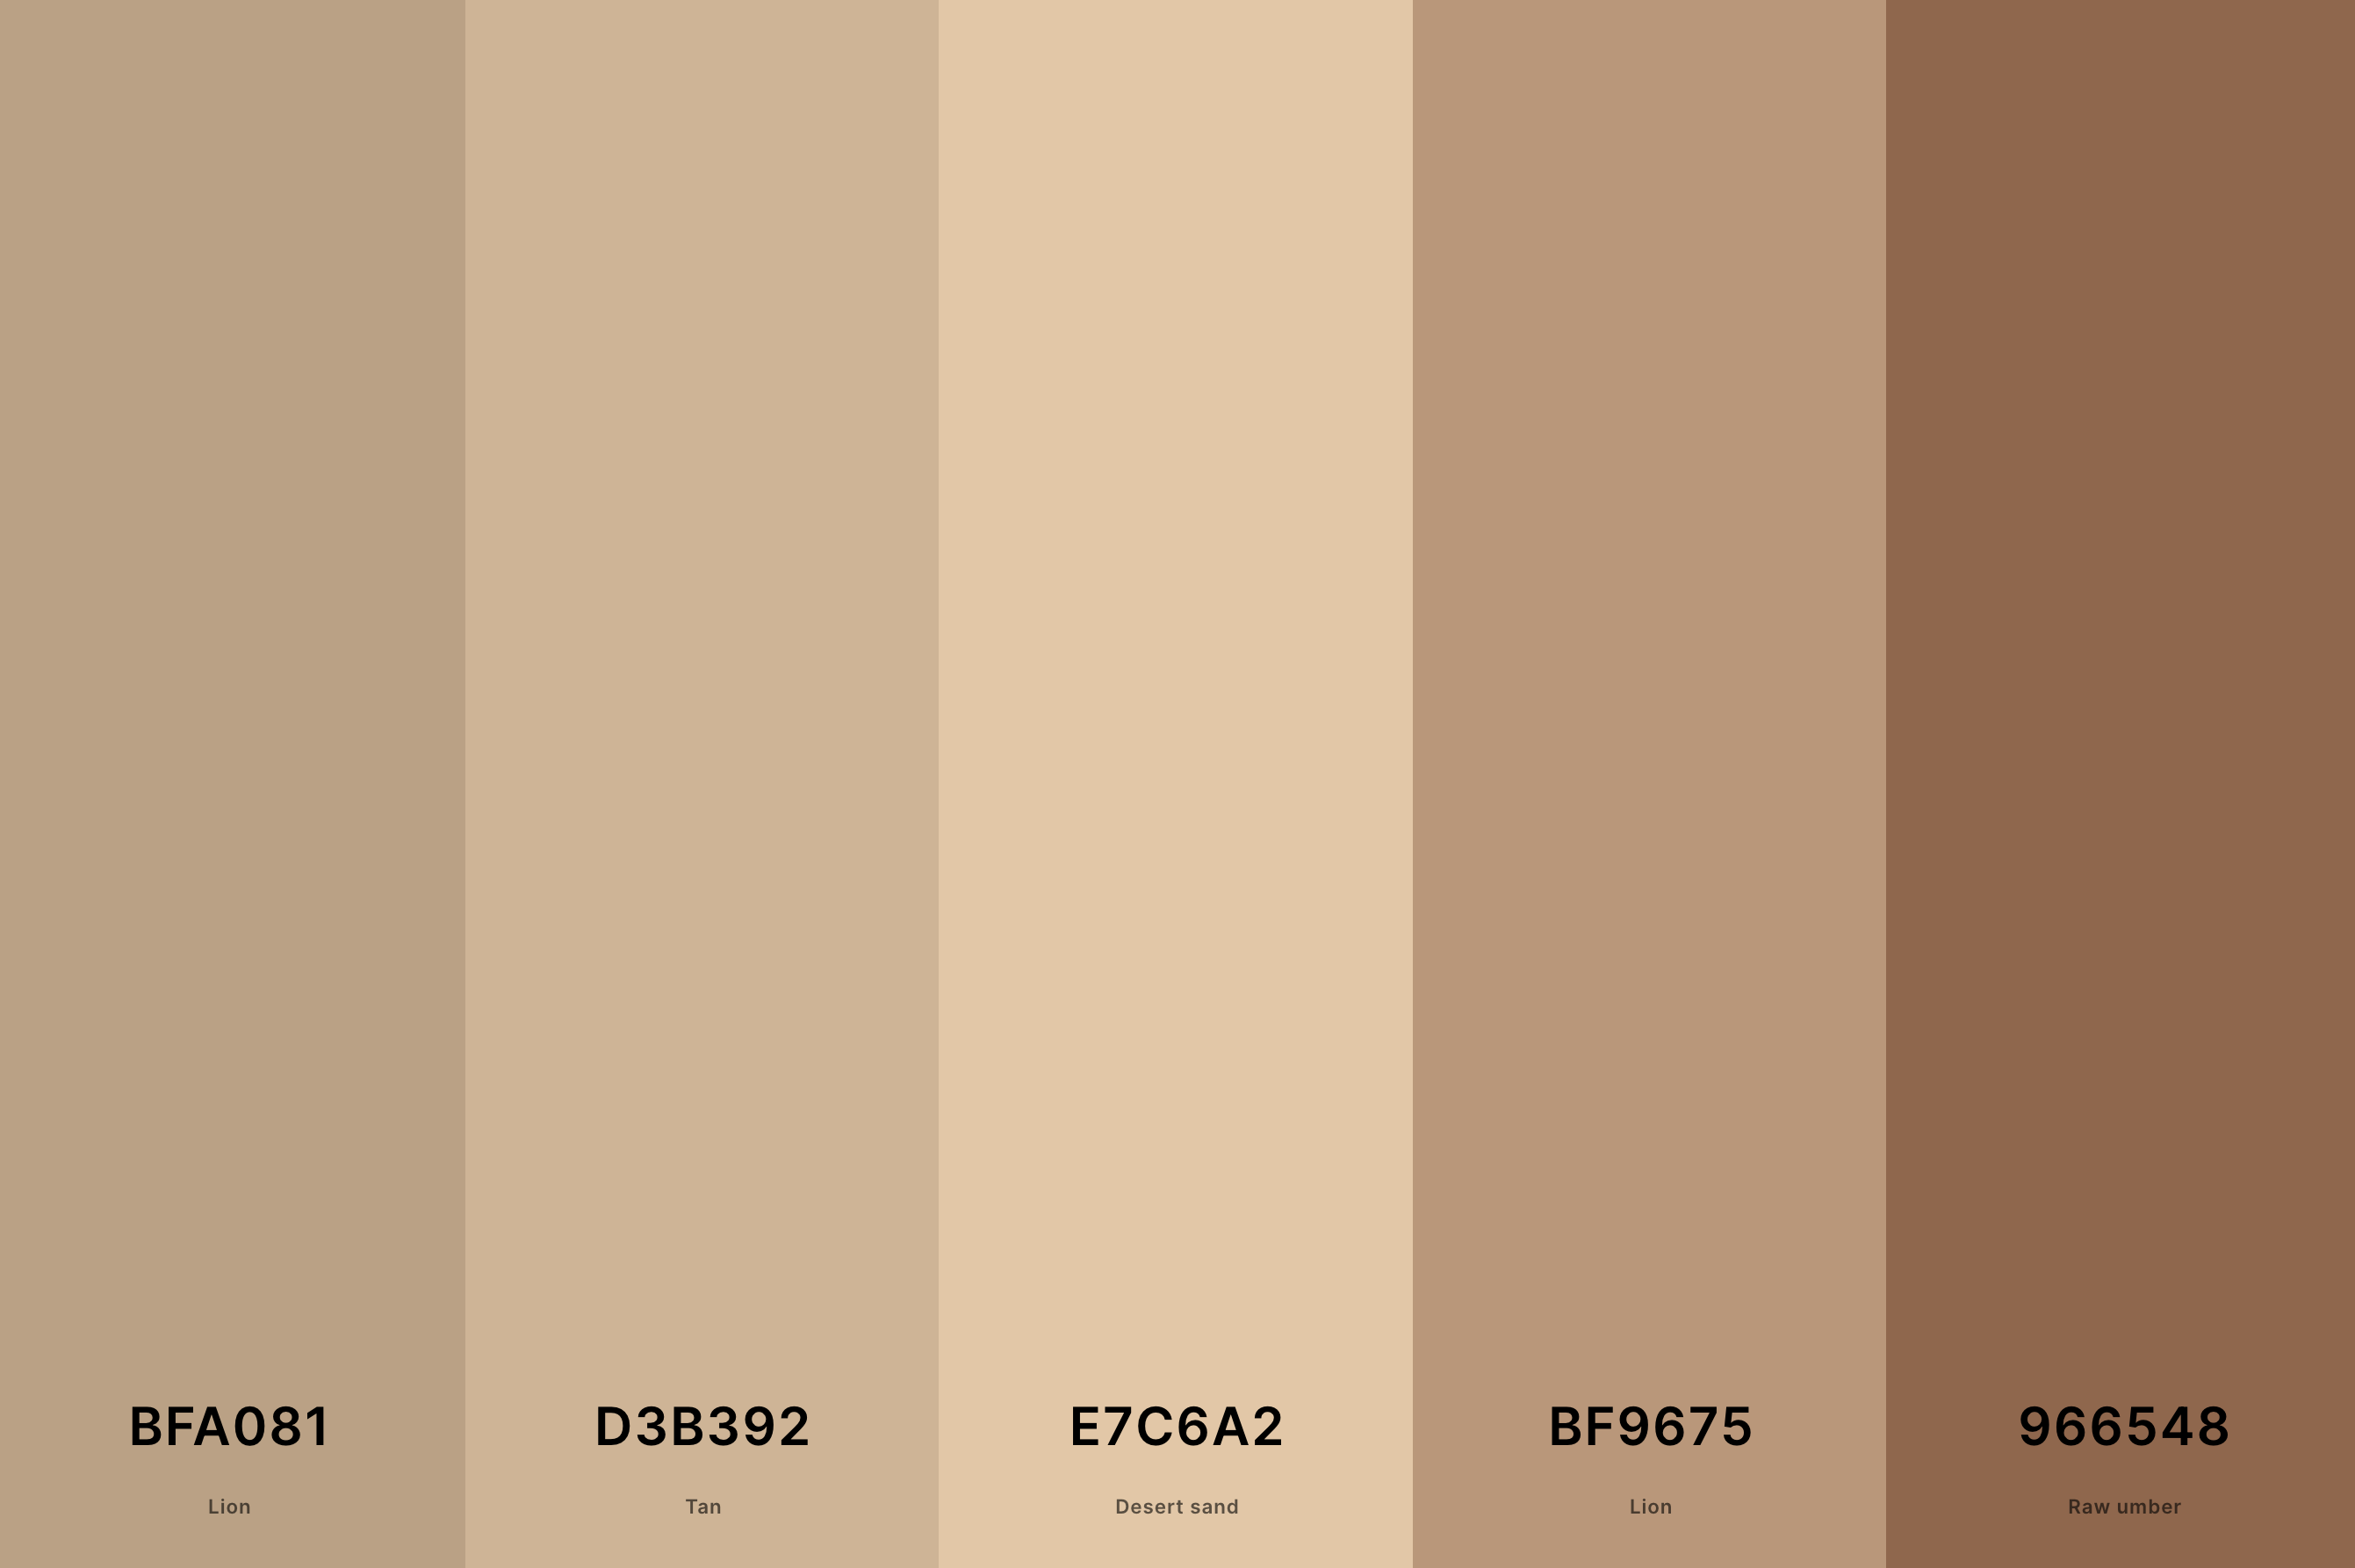 18. Pastel Brown Color Palette Color Palette with Lion (Hex #BFA081) + Tan (Hex #D3B392) + Desert Sand (Hex #E7C6A2) + Lion (Hex #BF9675) + Raw Umber (Hex #966548) Color Palette with Hex Codes